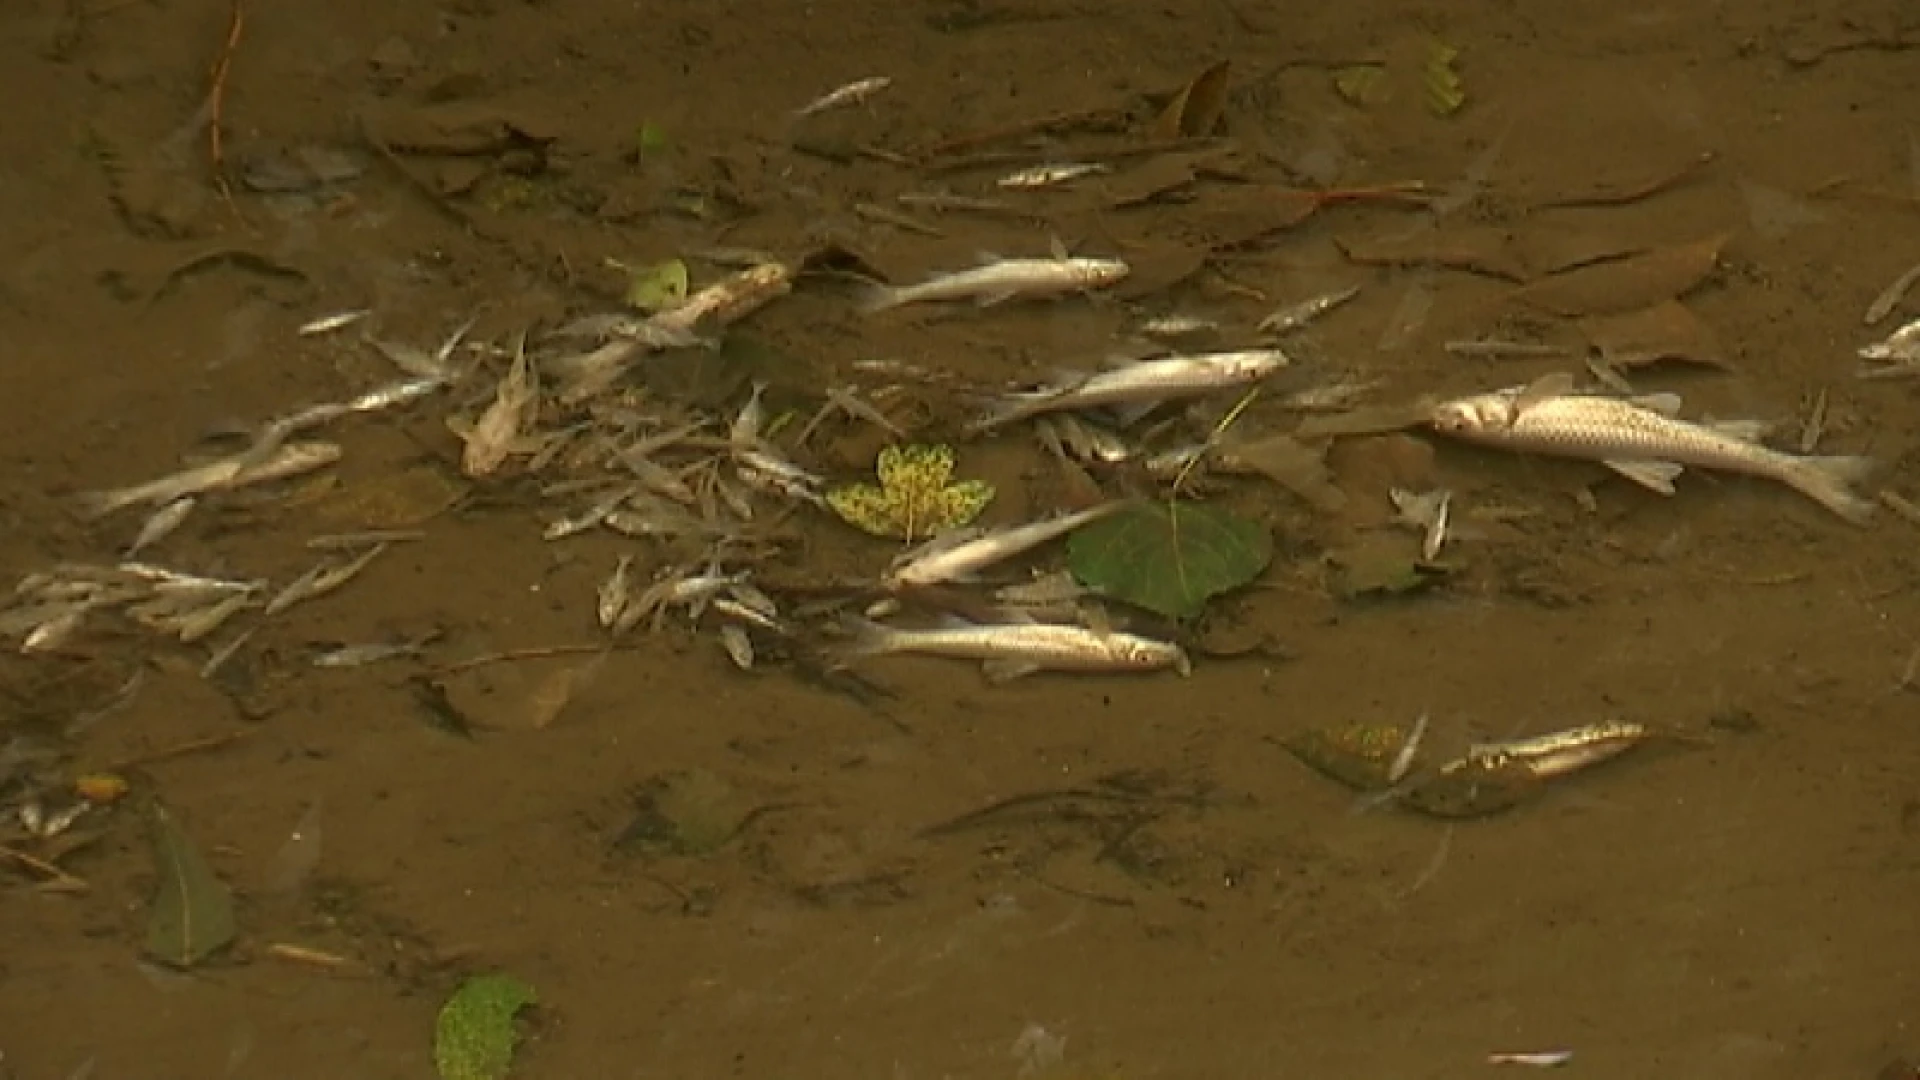 Afvoer van giftig materiaal vermoedelijk oorzaak vissterfte in Begijnenbeek in Diest